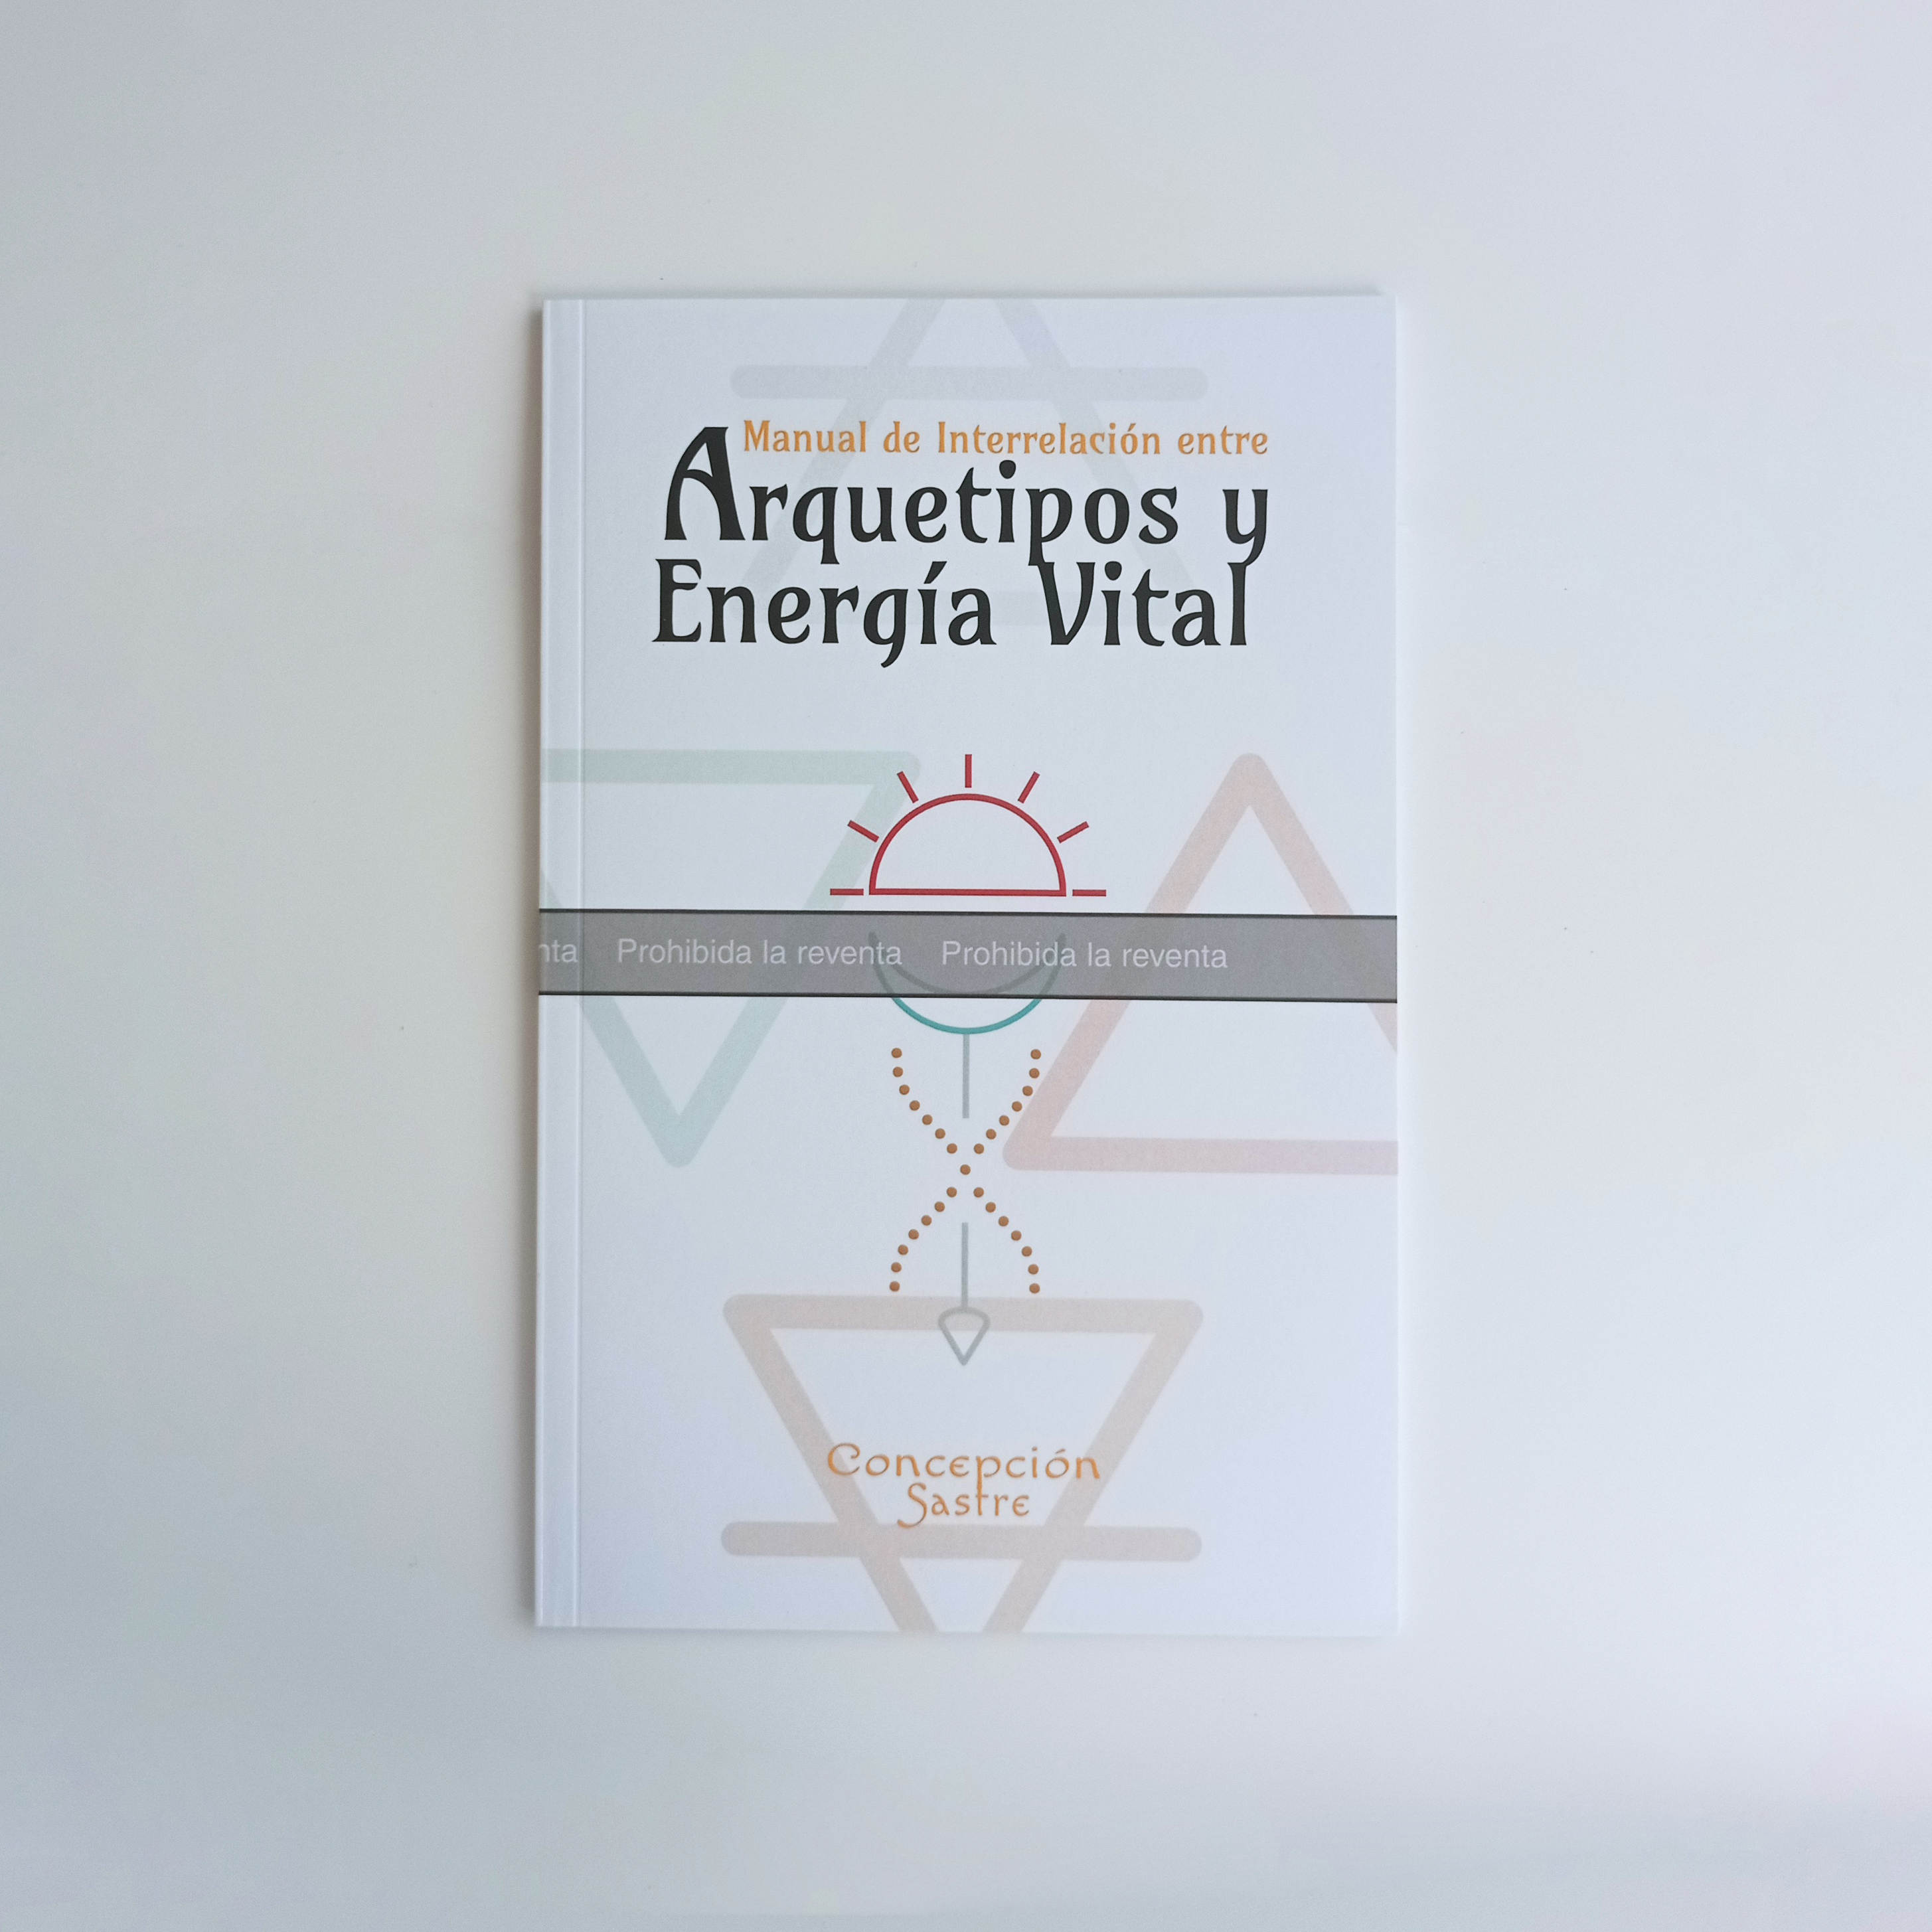 Imagen del Manual de Interrelación entre arquetipoos y energía vital 2